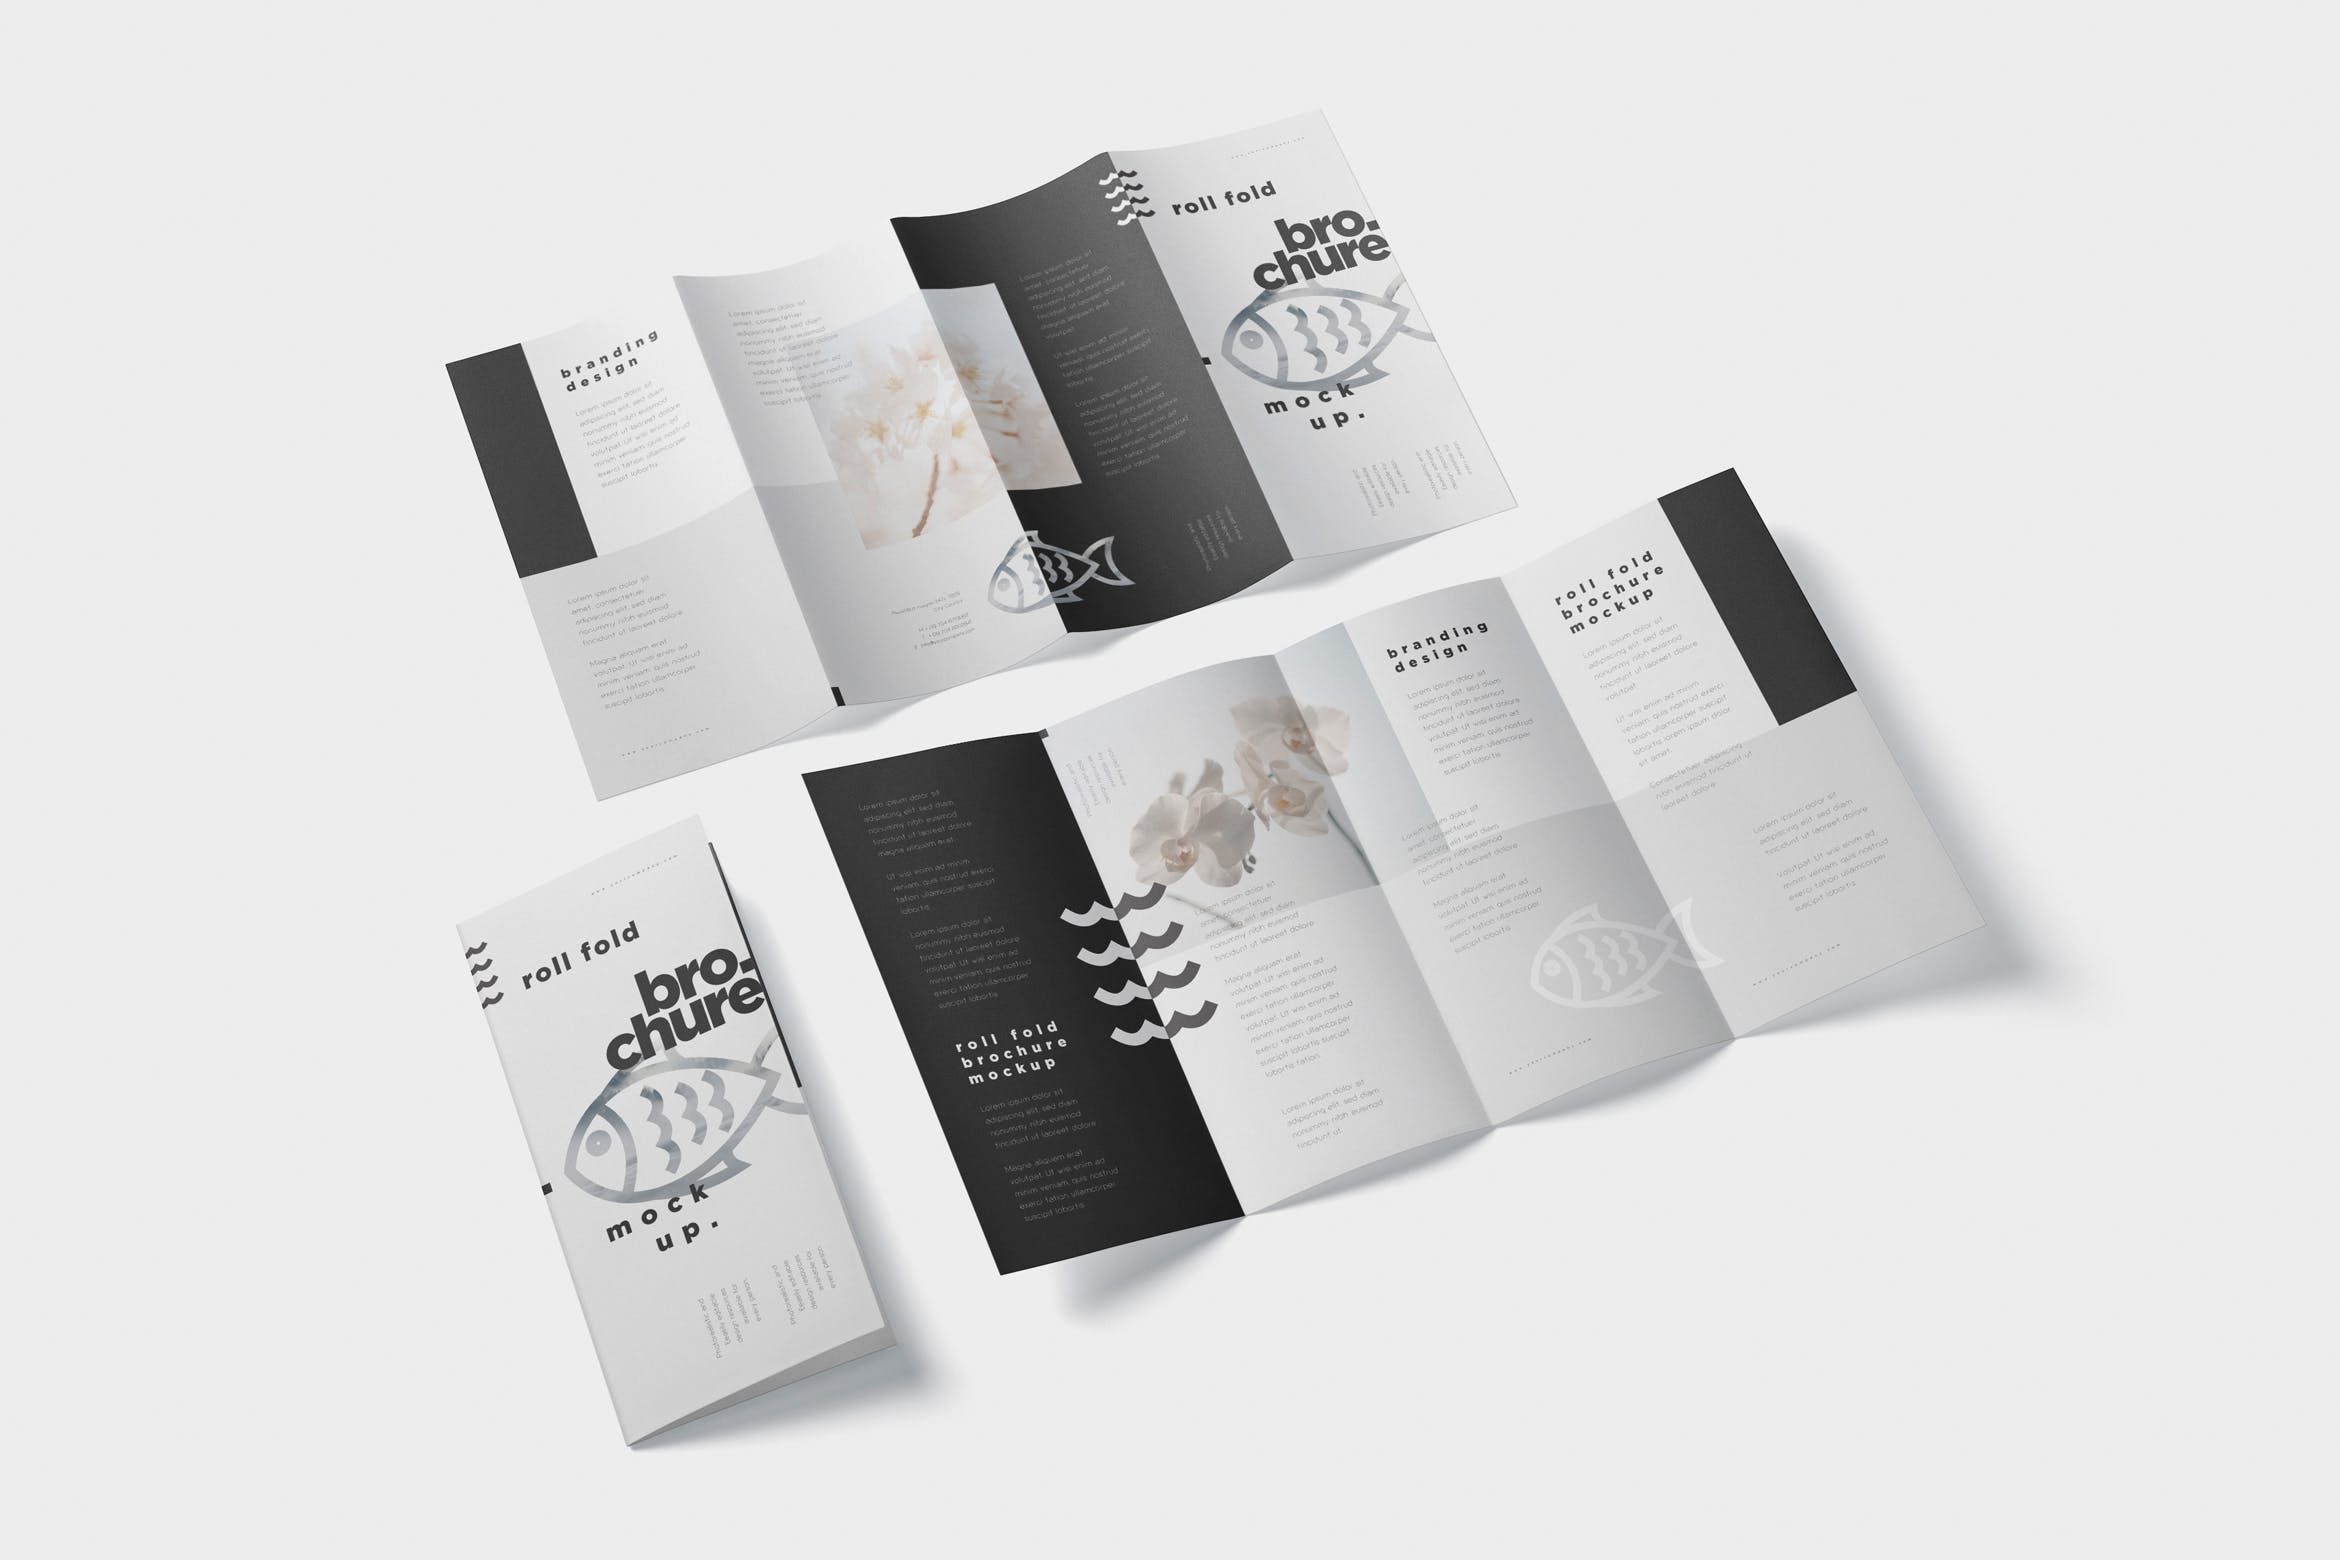 折叠设计风格企业传单/宣传册设计样机蚂蚁素材精选 Roll-Fold Brochure Mockup – DL DIN Lang Size插图